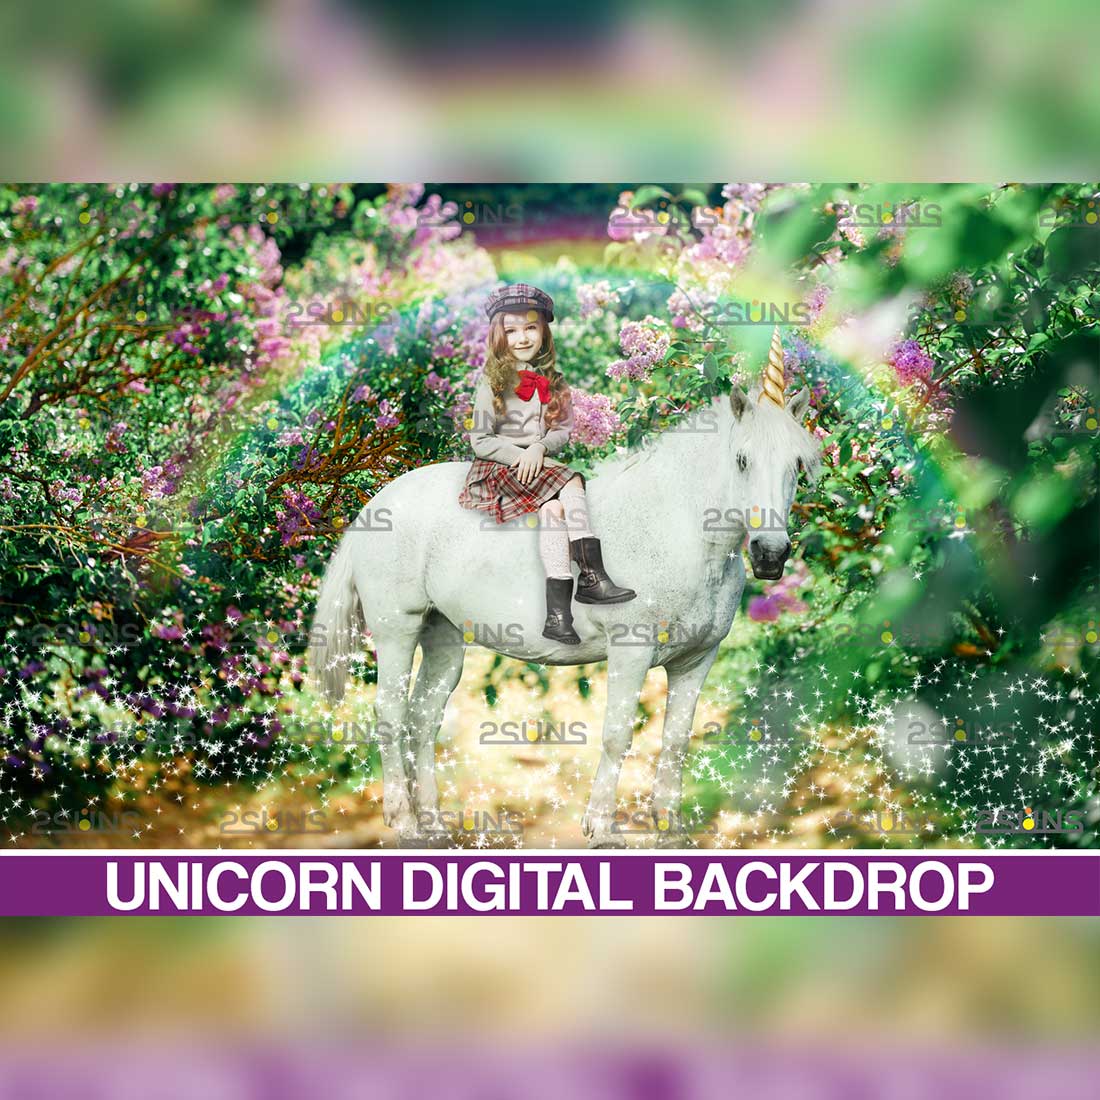 Unicorn Digital Background Overlay Cover Image.